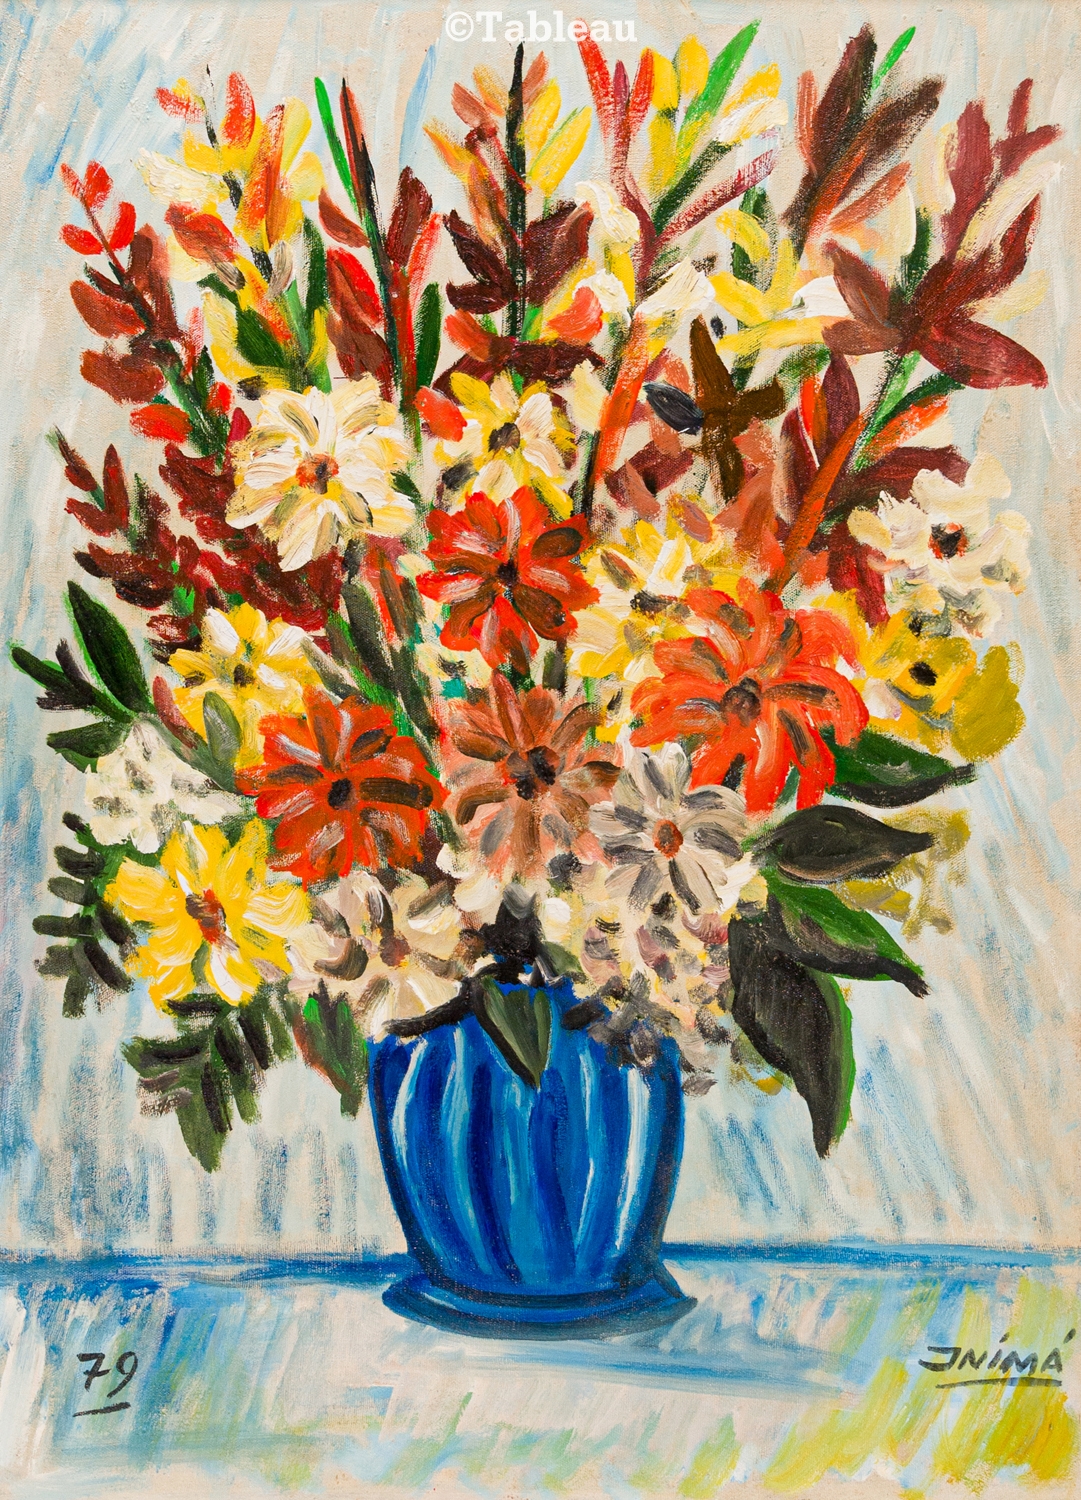 Vaso de flores by Inimá de Paula, 1979